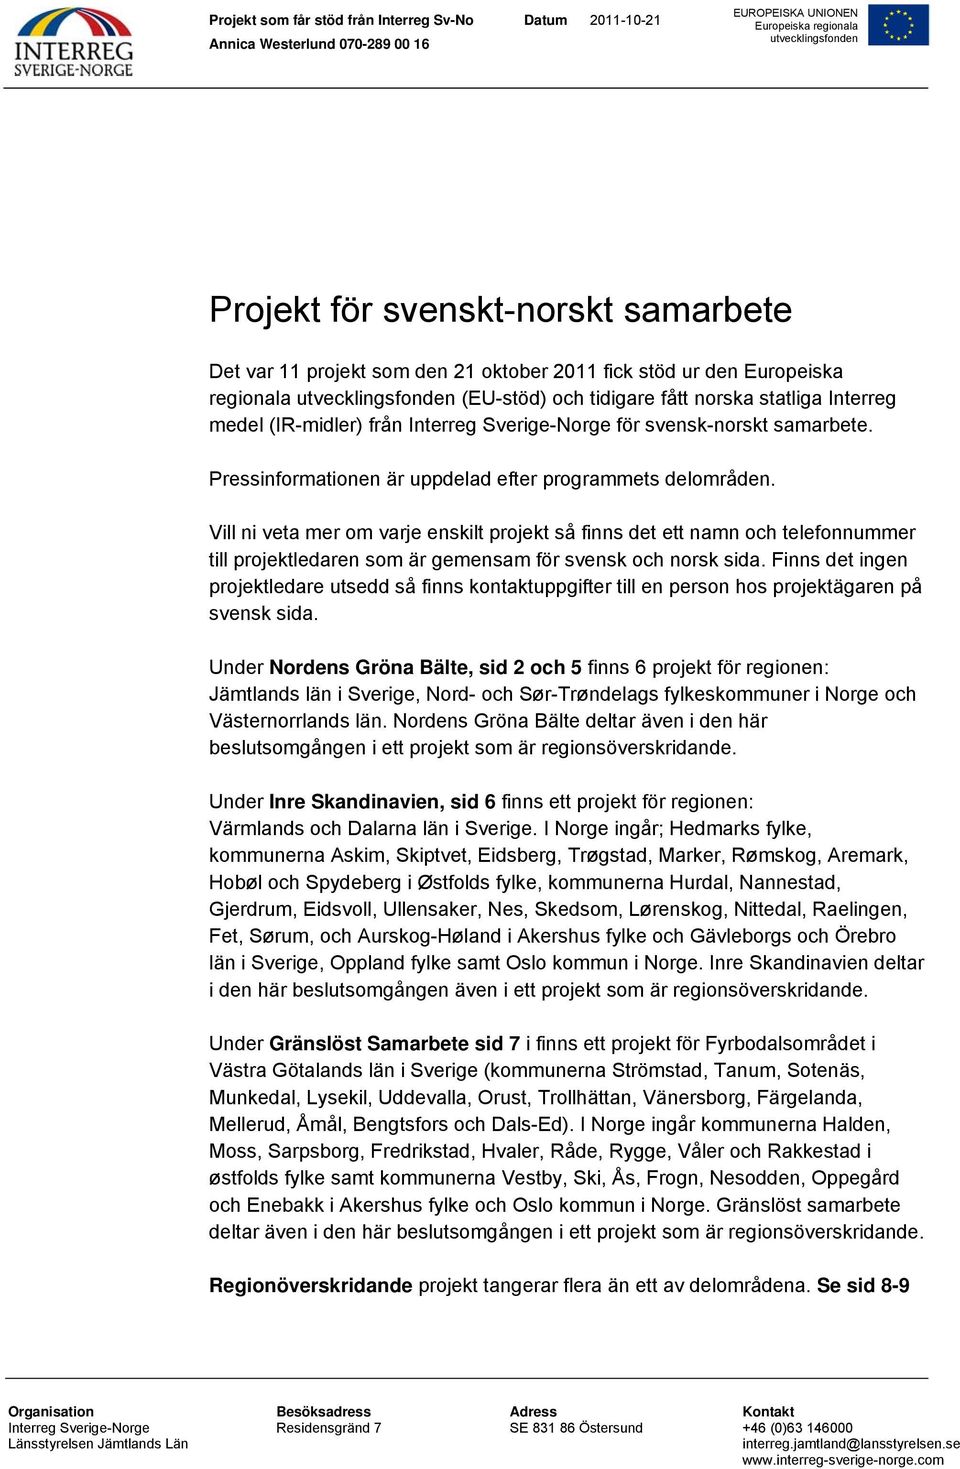 Vill ni veta mer om varje enskilt projekt så finns det ett namn och telefonnummer till projektledaren som är gemensam för svensk och norsk sida.